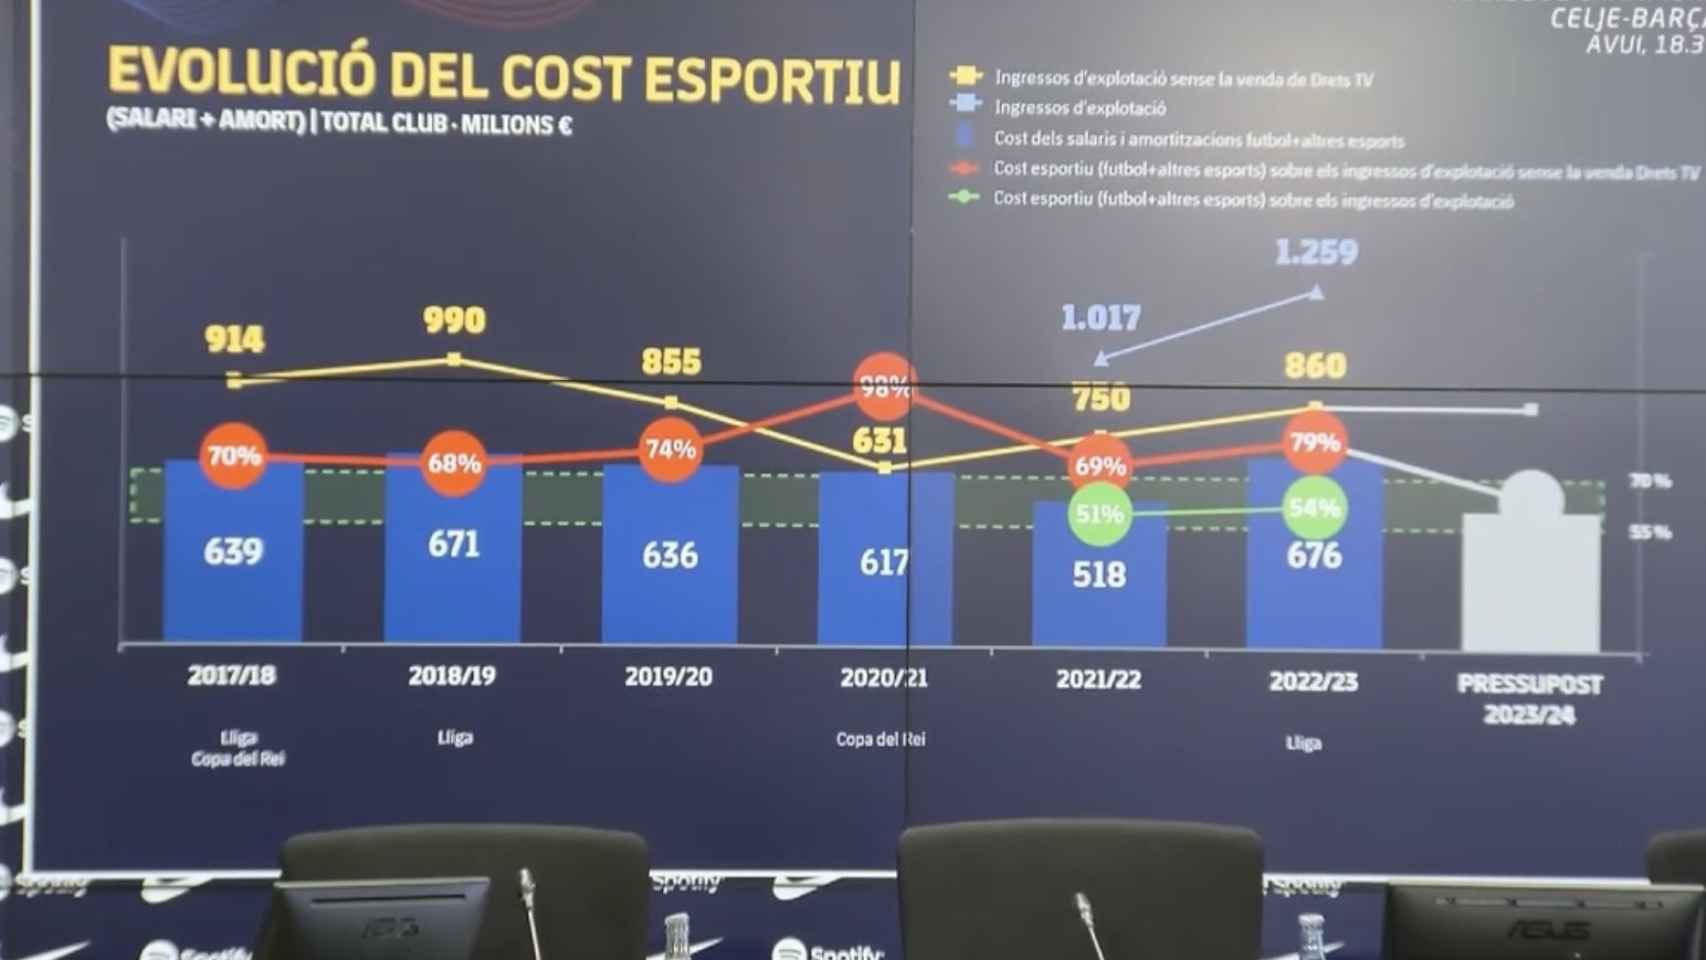 Diapositiva sobre la evolución del coste deportivo del Barça